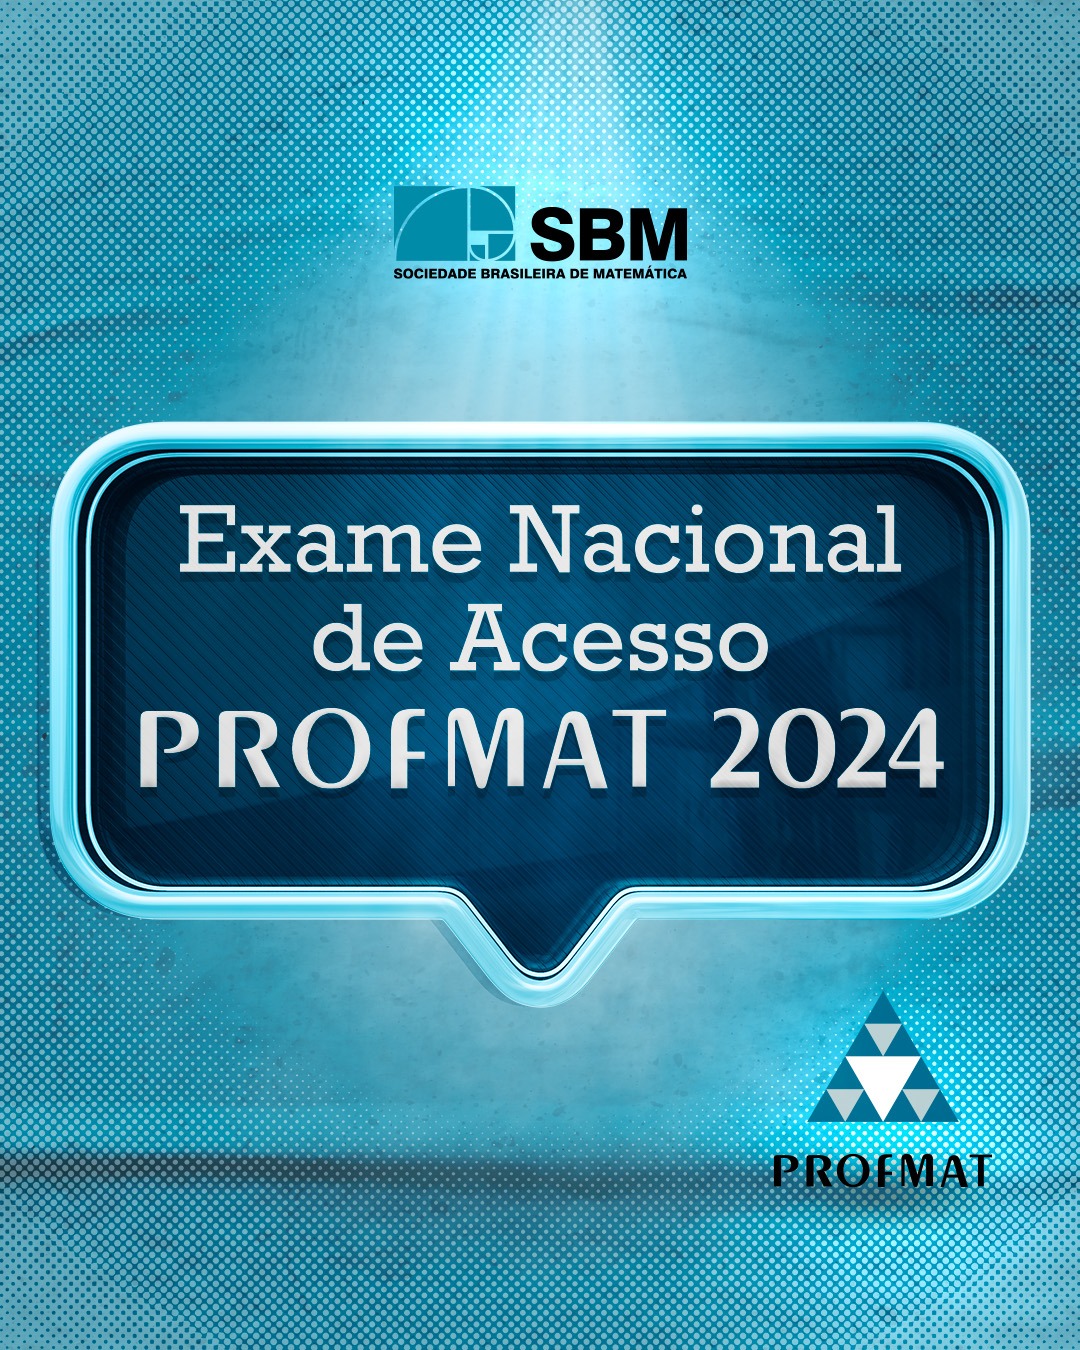 SEGUNDA chamada para vagas do ENA 2023- PROFMAT/UFMS/Campo Grande - Mestrado  Profissional em Matemática em Rede Nacional